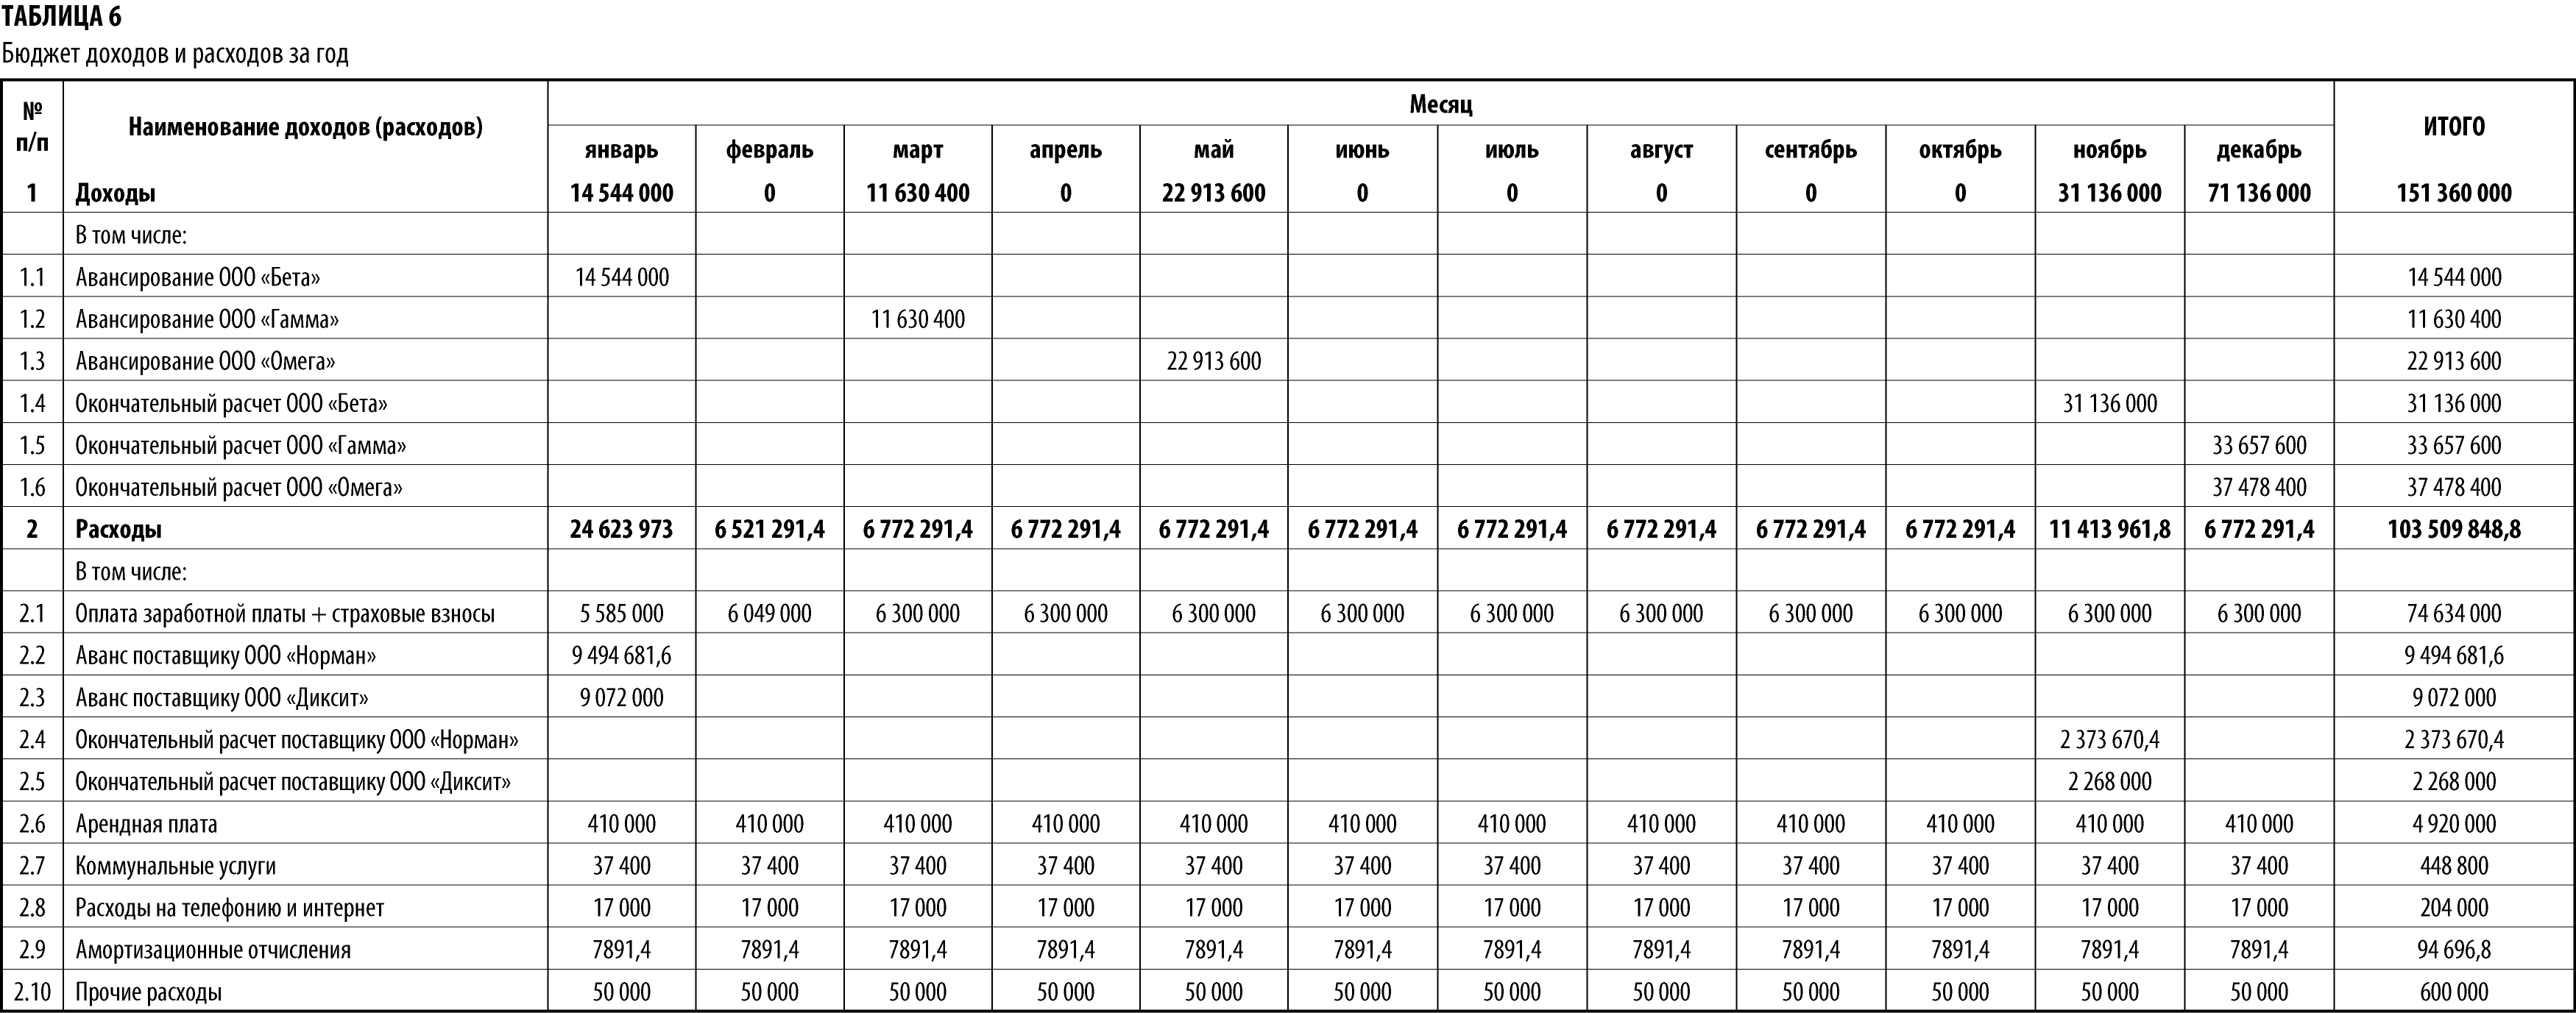 Таблица учёта доходов и расходов